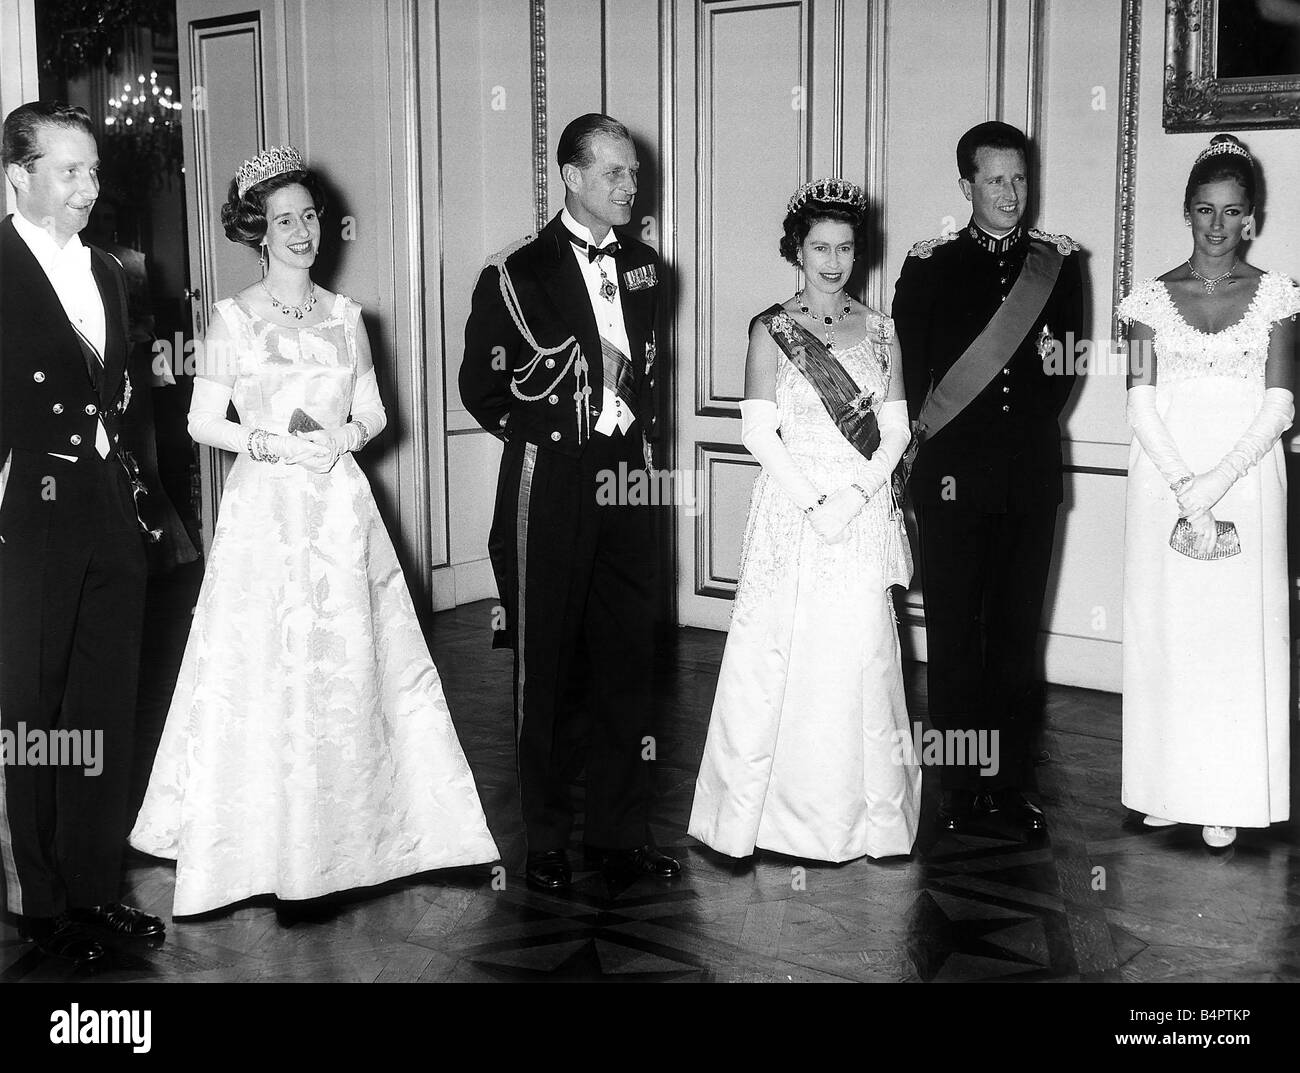 1966 Prince Albert Belgium Stockfotos Und Bilder Kaufen Alamy